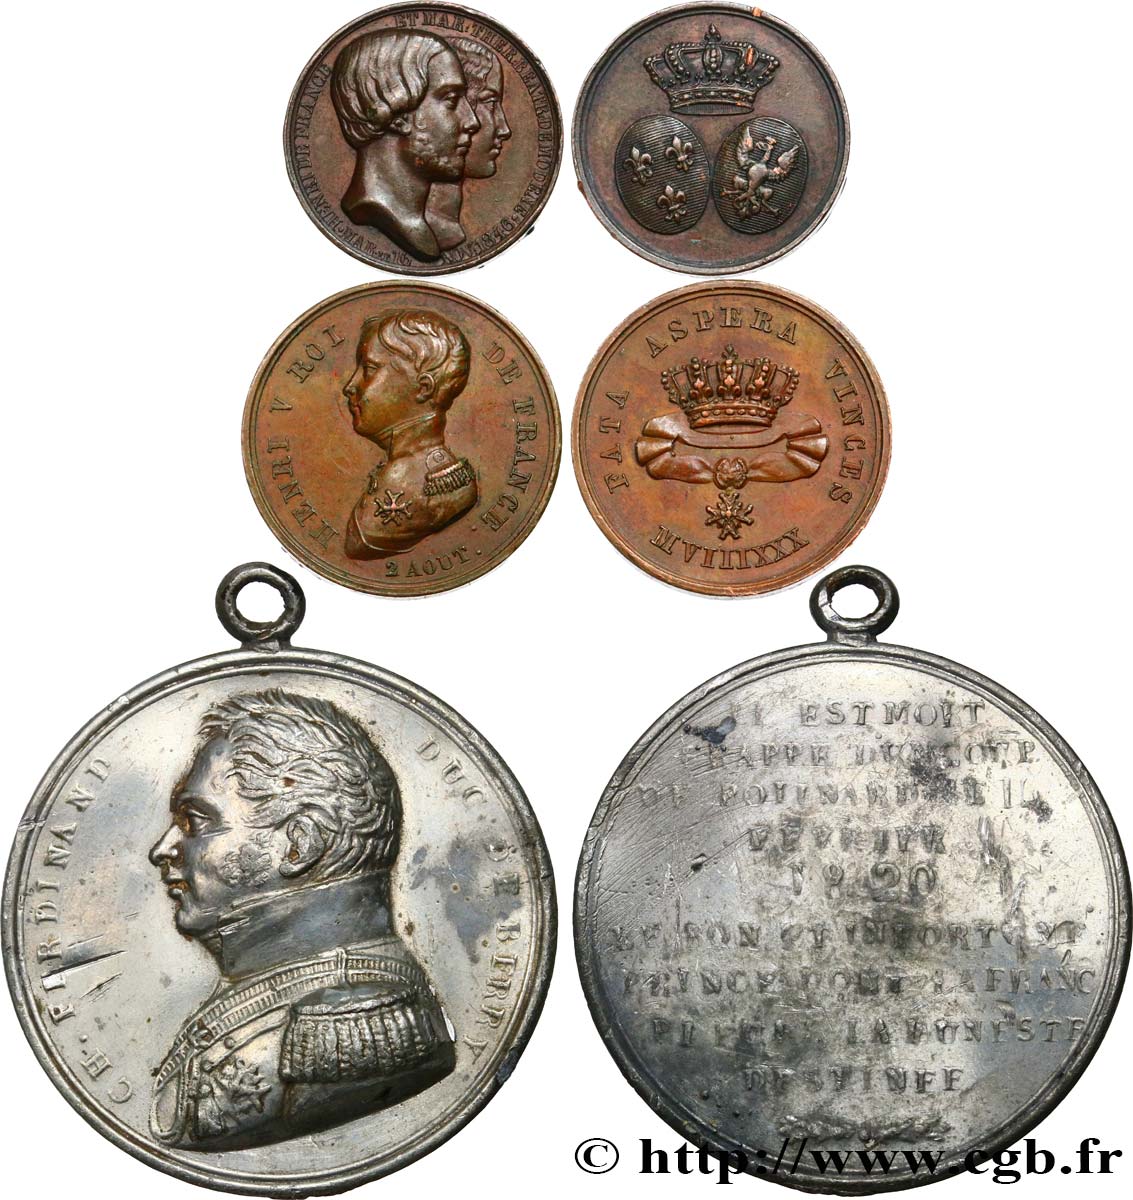 HENRI V COMTE DE CHAMBORD Lot de 3 médailles relatives à la vie d’Henri V, comte de Chambord BB